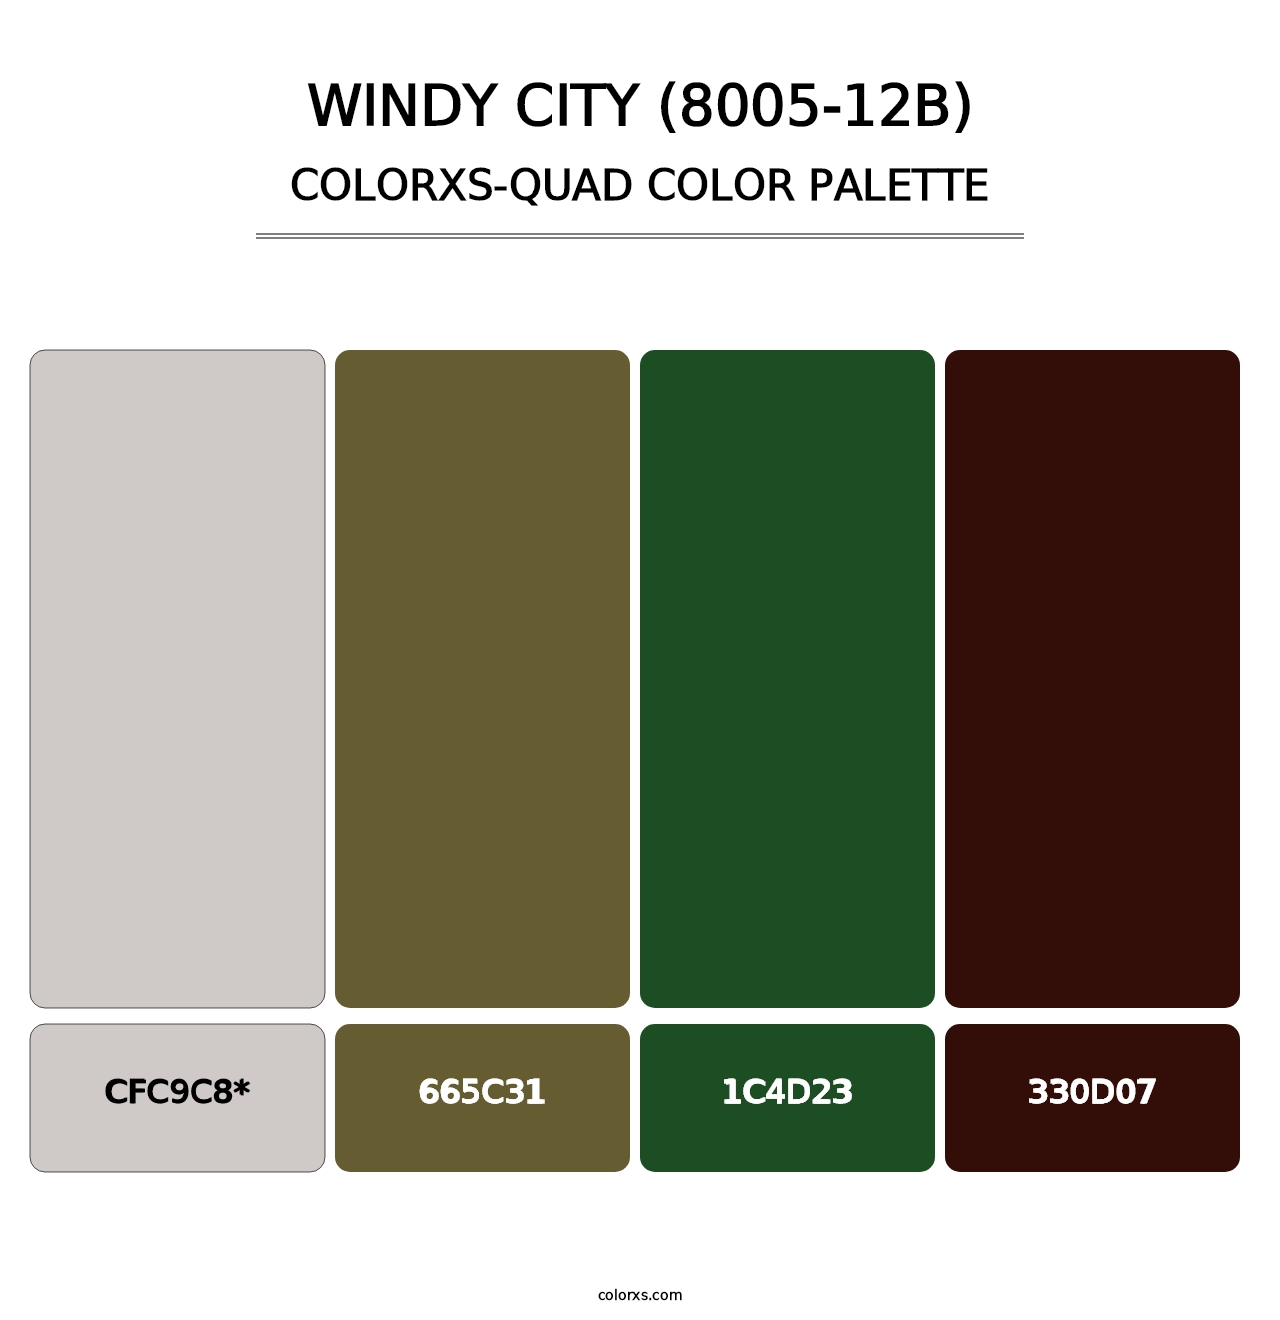 Windy City (8005-12B) - Colorxs Quad Palette